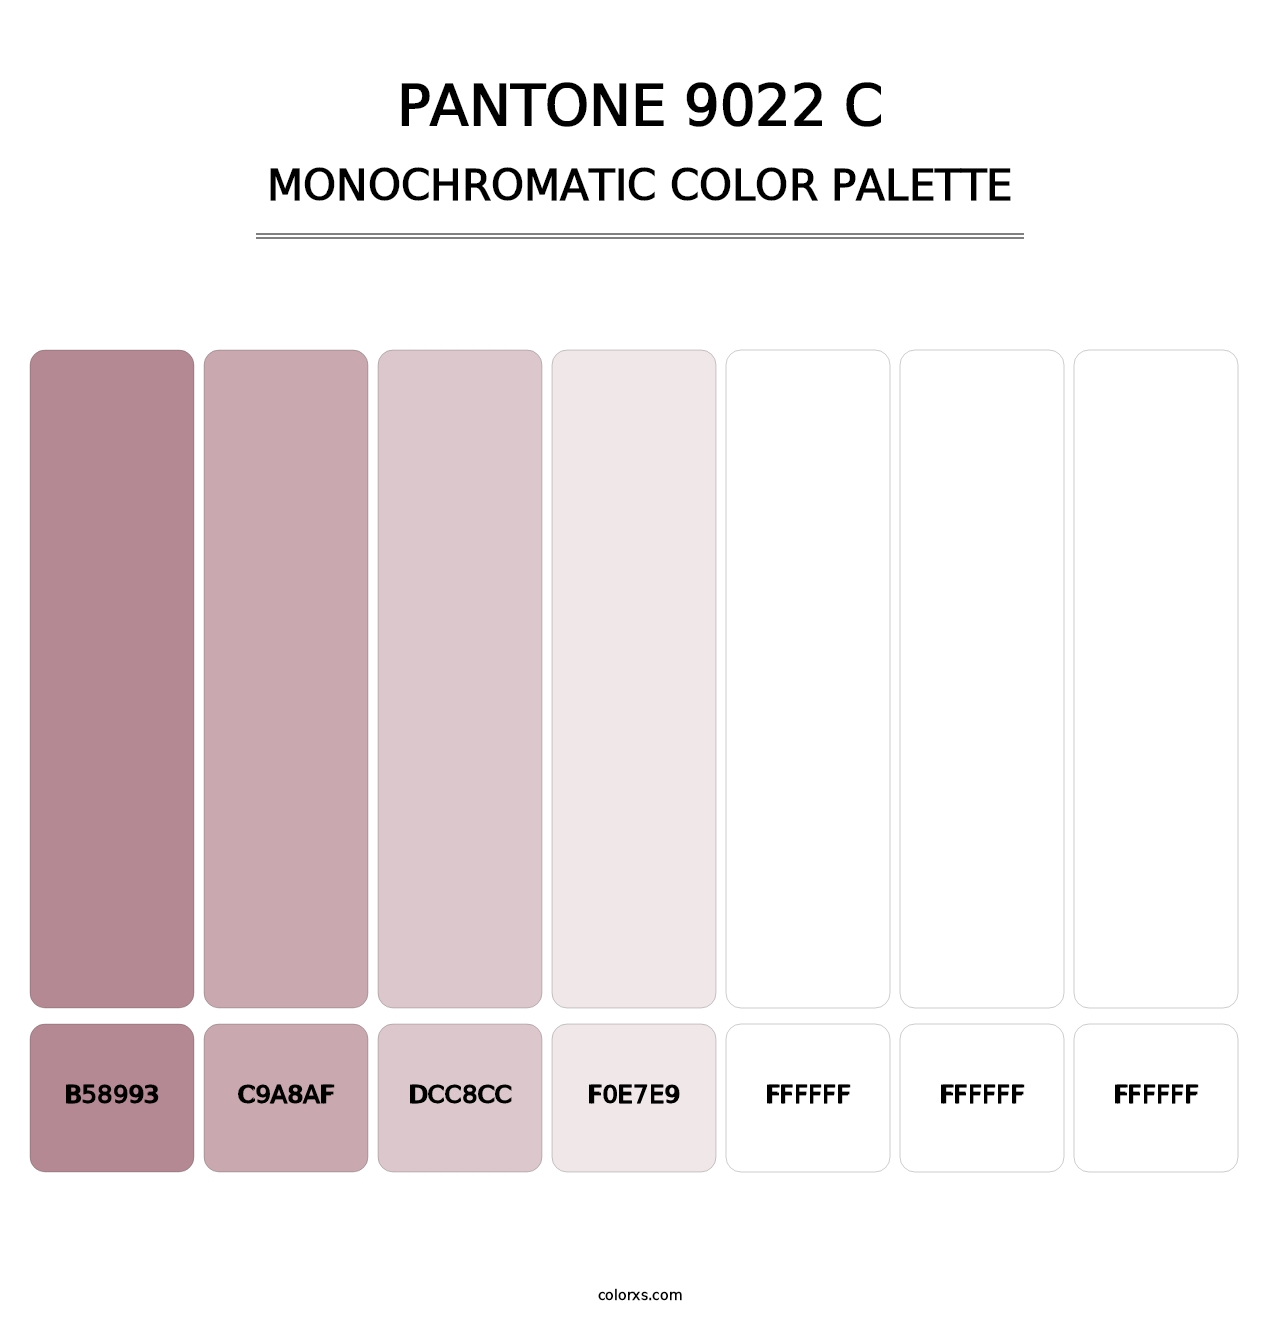 PANTONE 9022 C - Monochromatic Color Palette